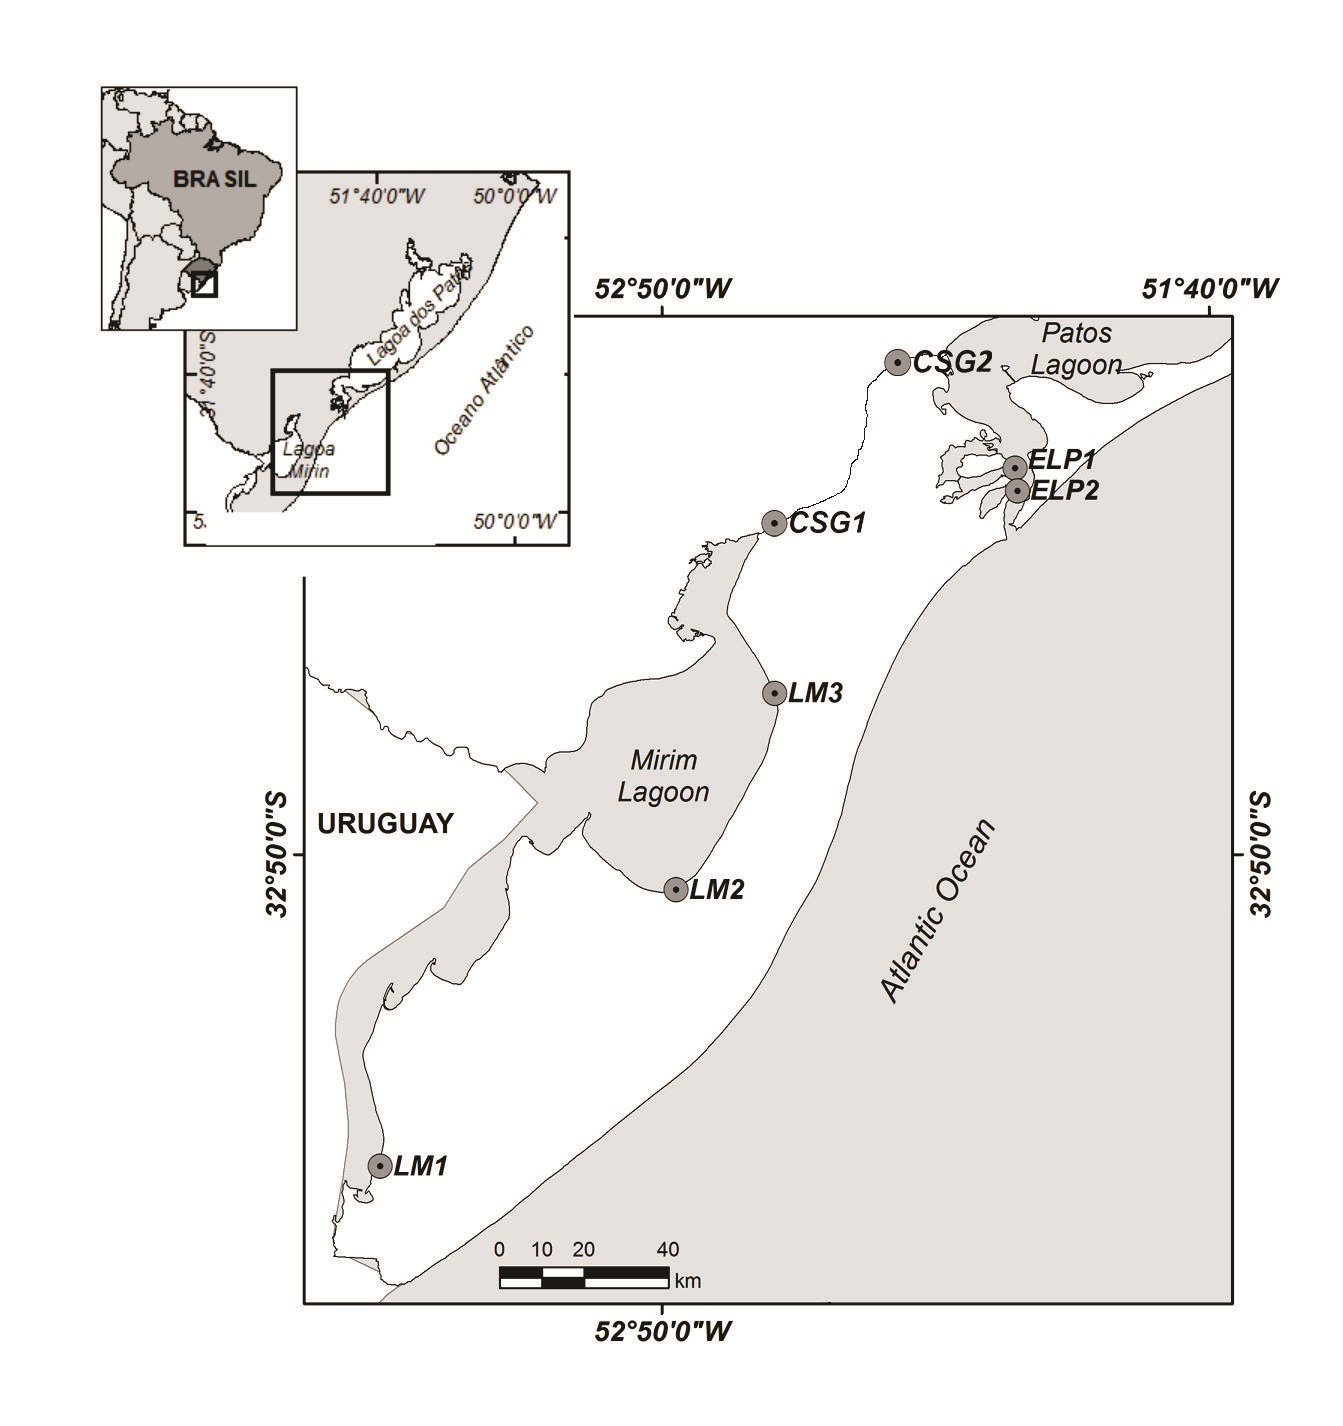 Figura 1 - Mapa do complexo lagunar Patos - Mirim com a localização dos pontos de amostragem do